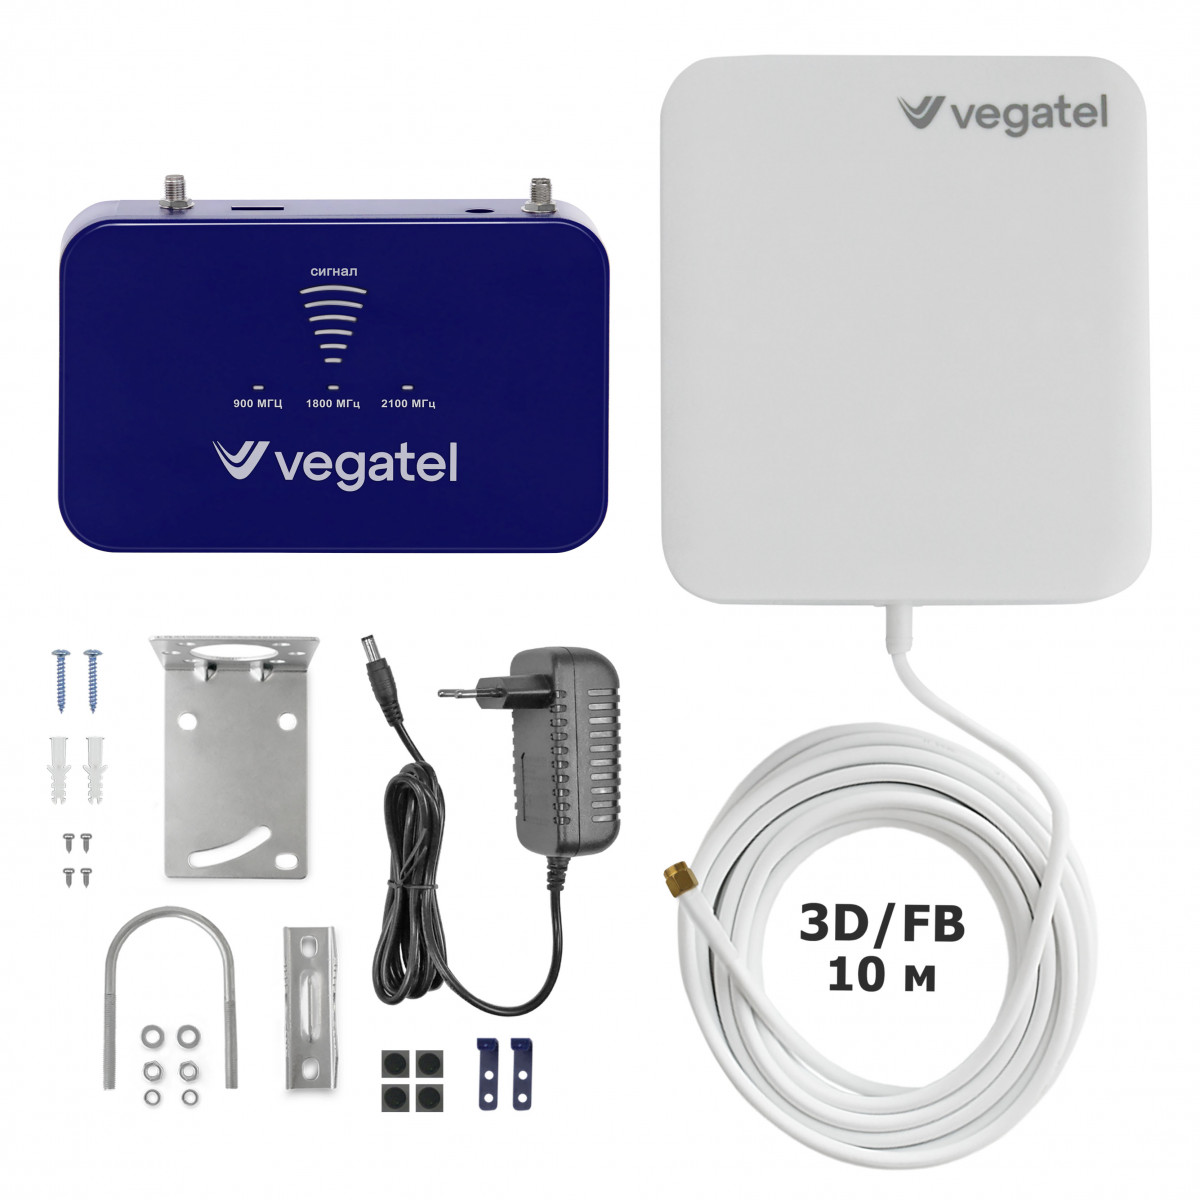 Детальное изображение товара "Комплект усиления сотовой связи Vegatel PL-900/1800/2100" из каталога оборудования Антенна76